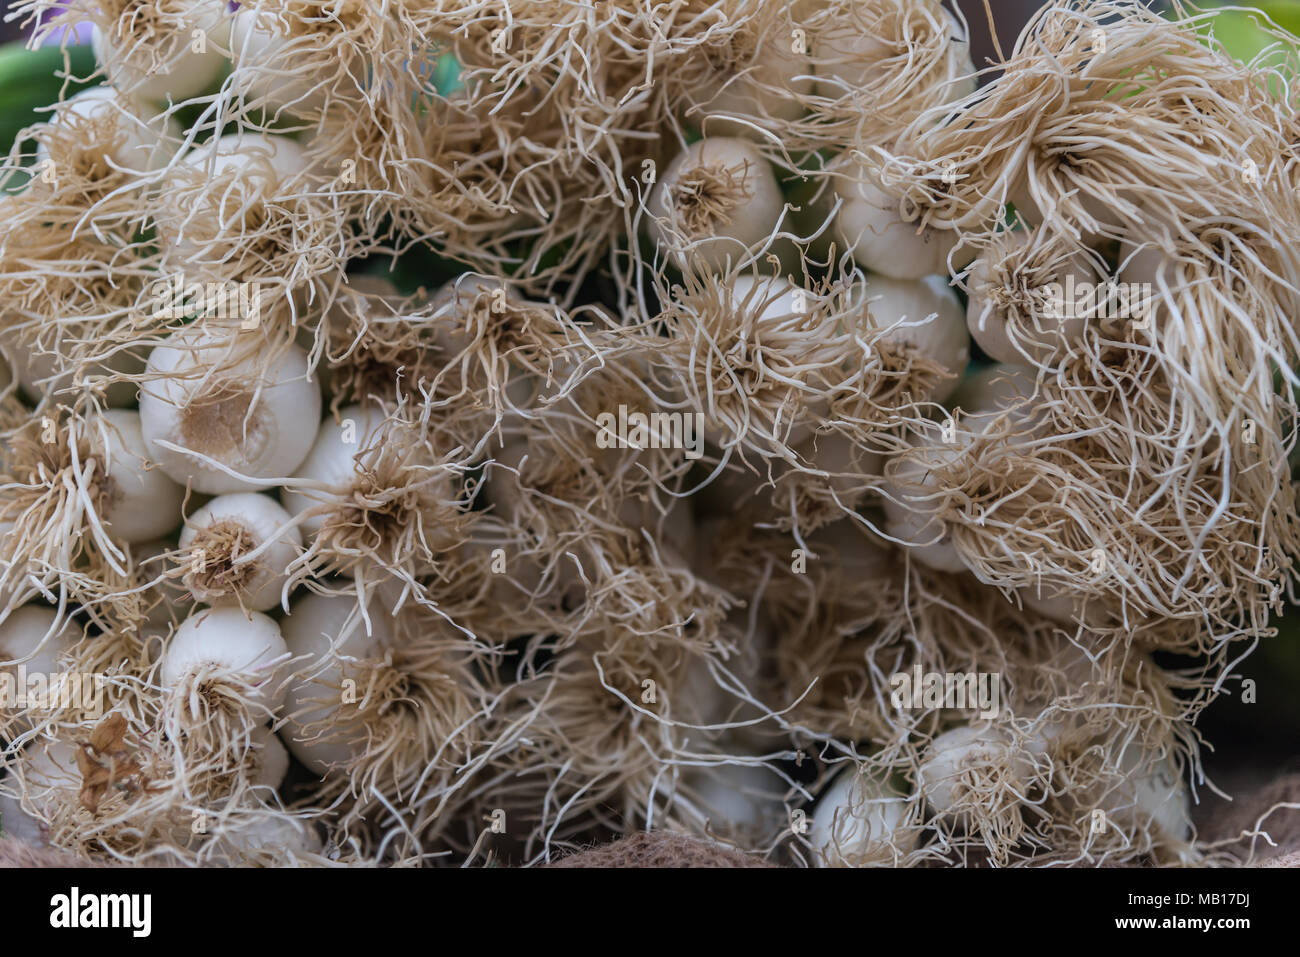 Von frischen Detailfoto Frühlingszwiebeln auf dem Markt von Palma de Mallorca Foto de stock